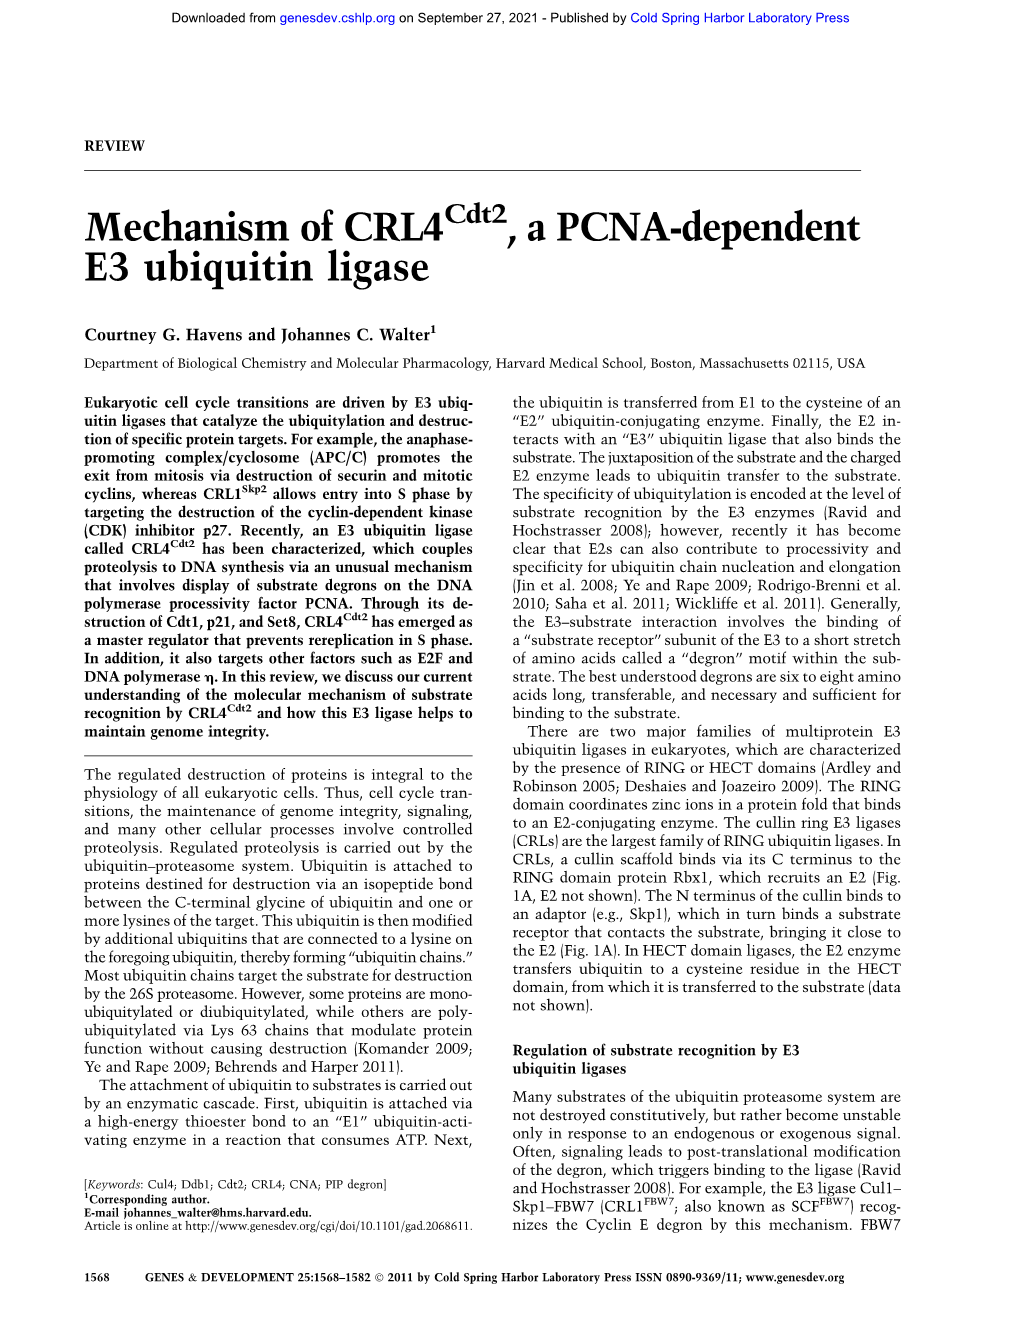 Mechanism of CRL4 , a PCNA-Dependent E3 Ubiquitin Ligase